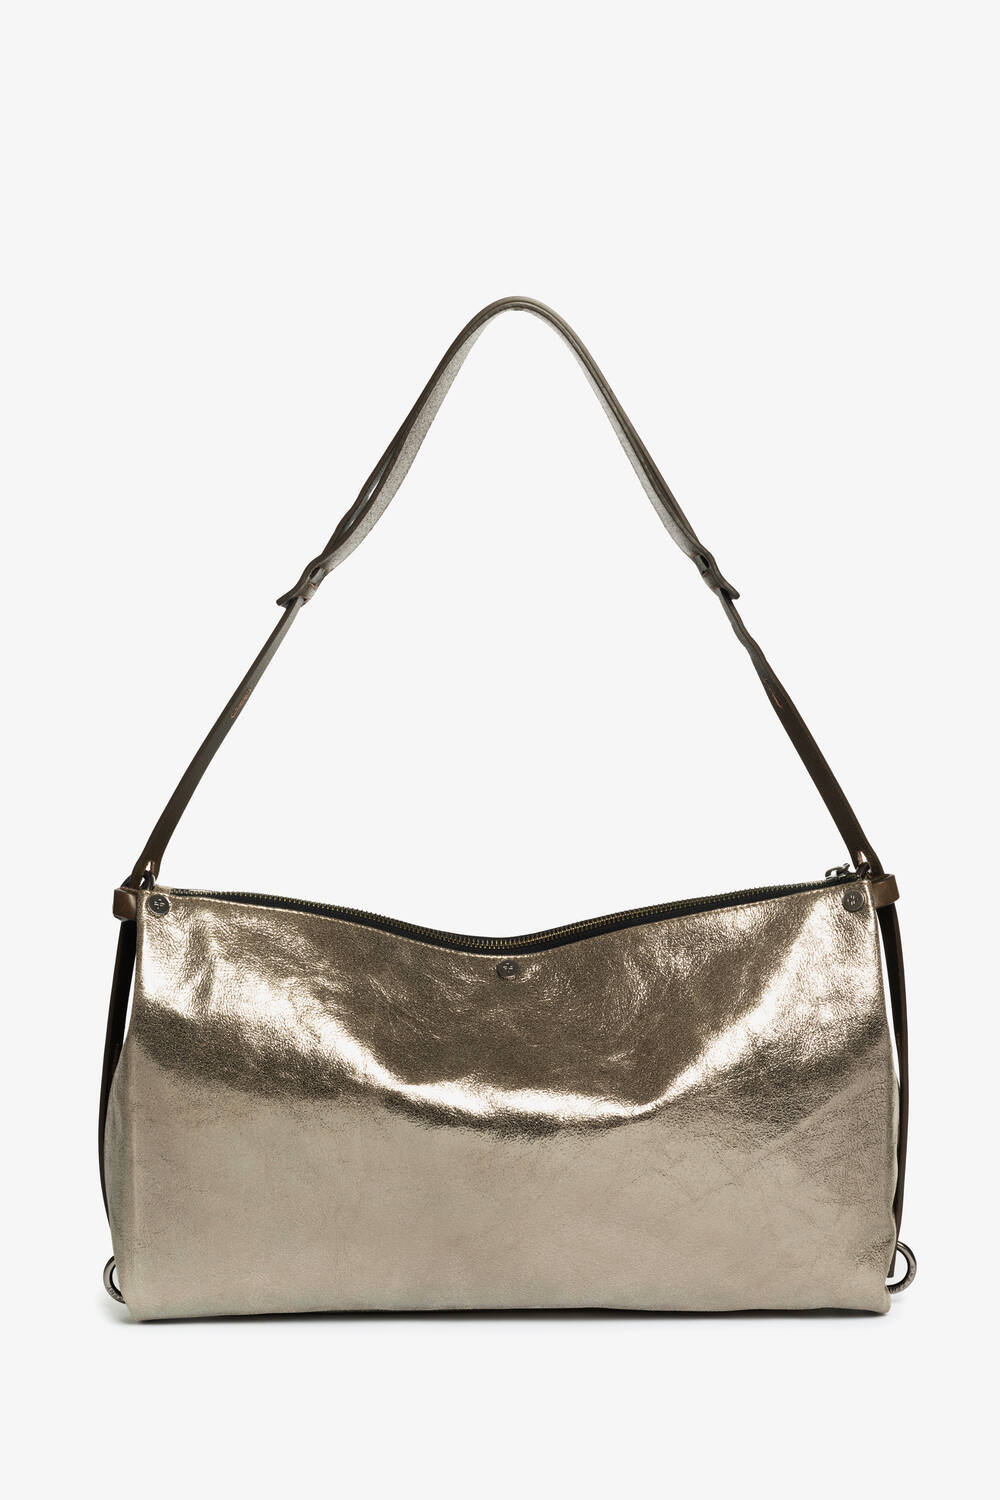 INA KENT versatile handbag made of shimmery metallic leather DINKUM ed.2 crackled anthra